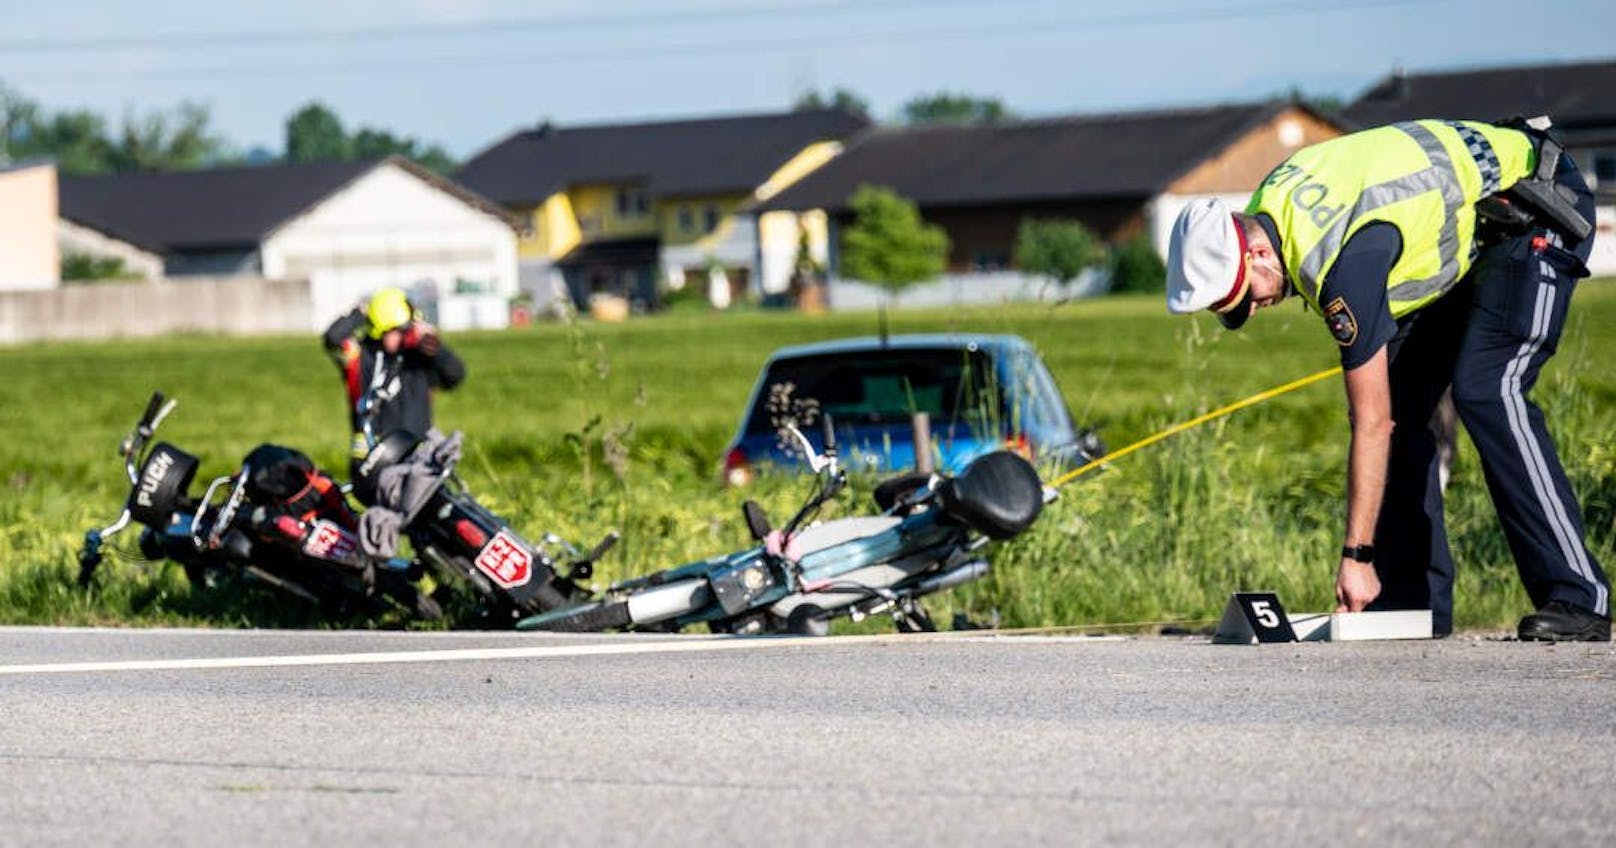 Bei dem Unfall raste ein Pkw in eine Gruppe aus Mopedfahrern, zwei Menschen starben.